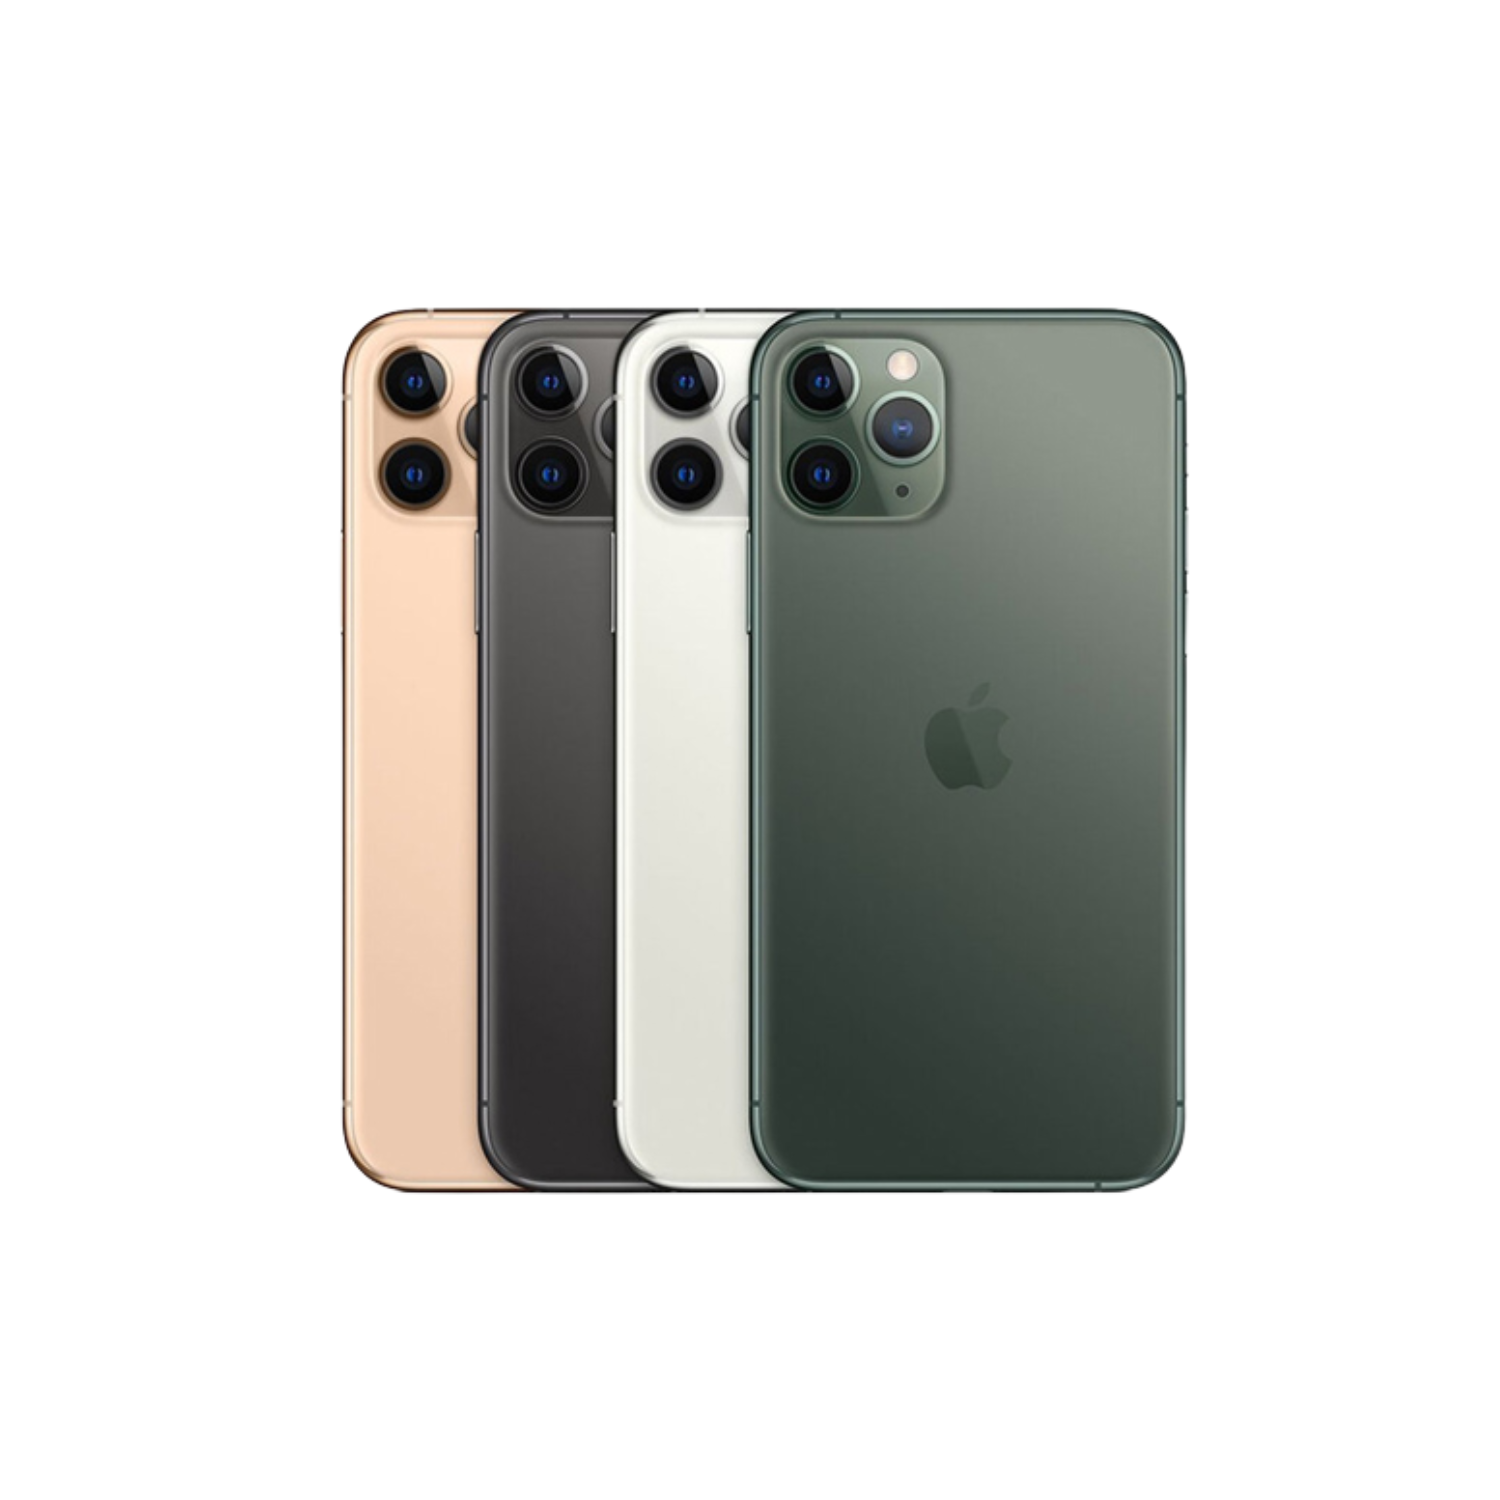 iPhone 11 Pro là một chiếc điện thoại đáng sở hữu với những tính năng tuyệt vời và thiết kế đẹp mắt. Xem hình ảnh này để chiêm ngưỡng vẻ đẹp của iPhone 11 Pro trong từng góc cạnh và tìm hiểu thêm về những tính năng nổi bật của sản phẩm này.